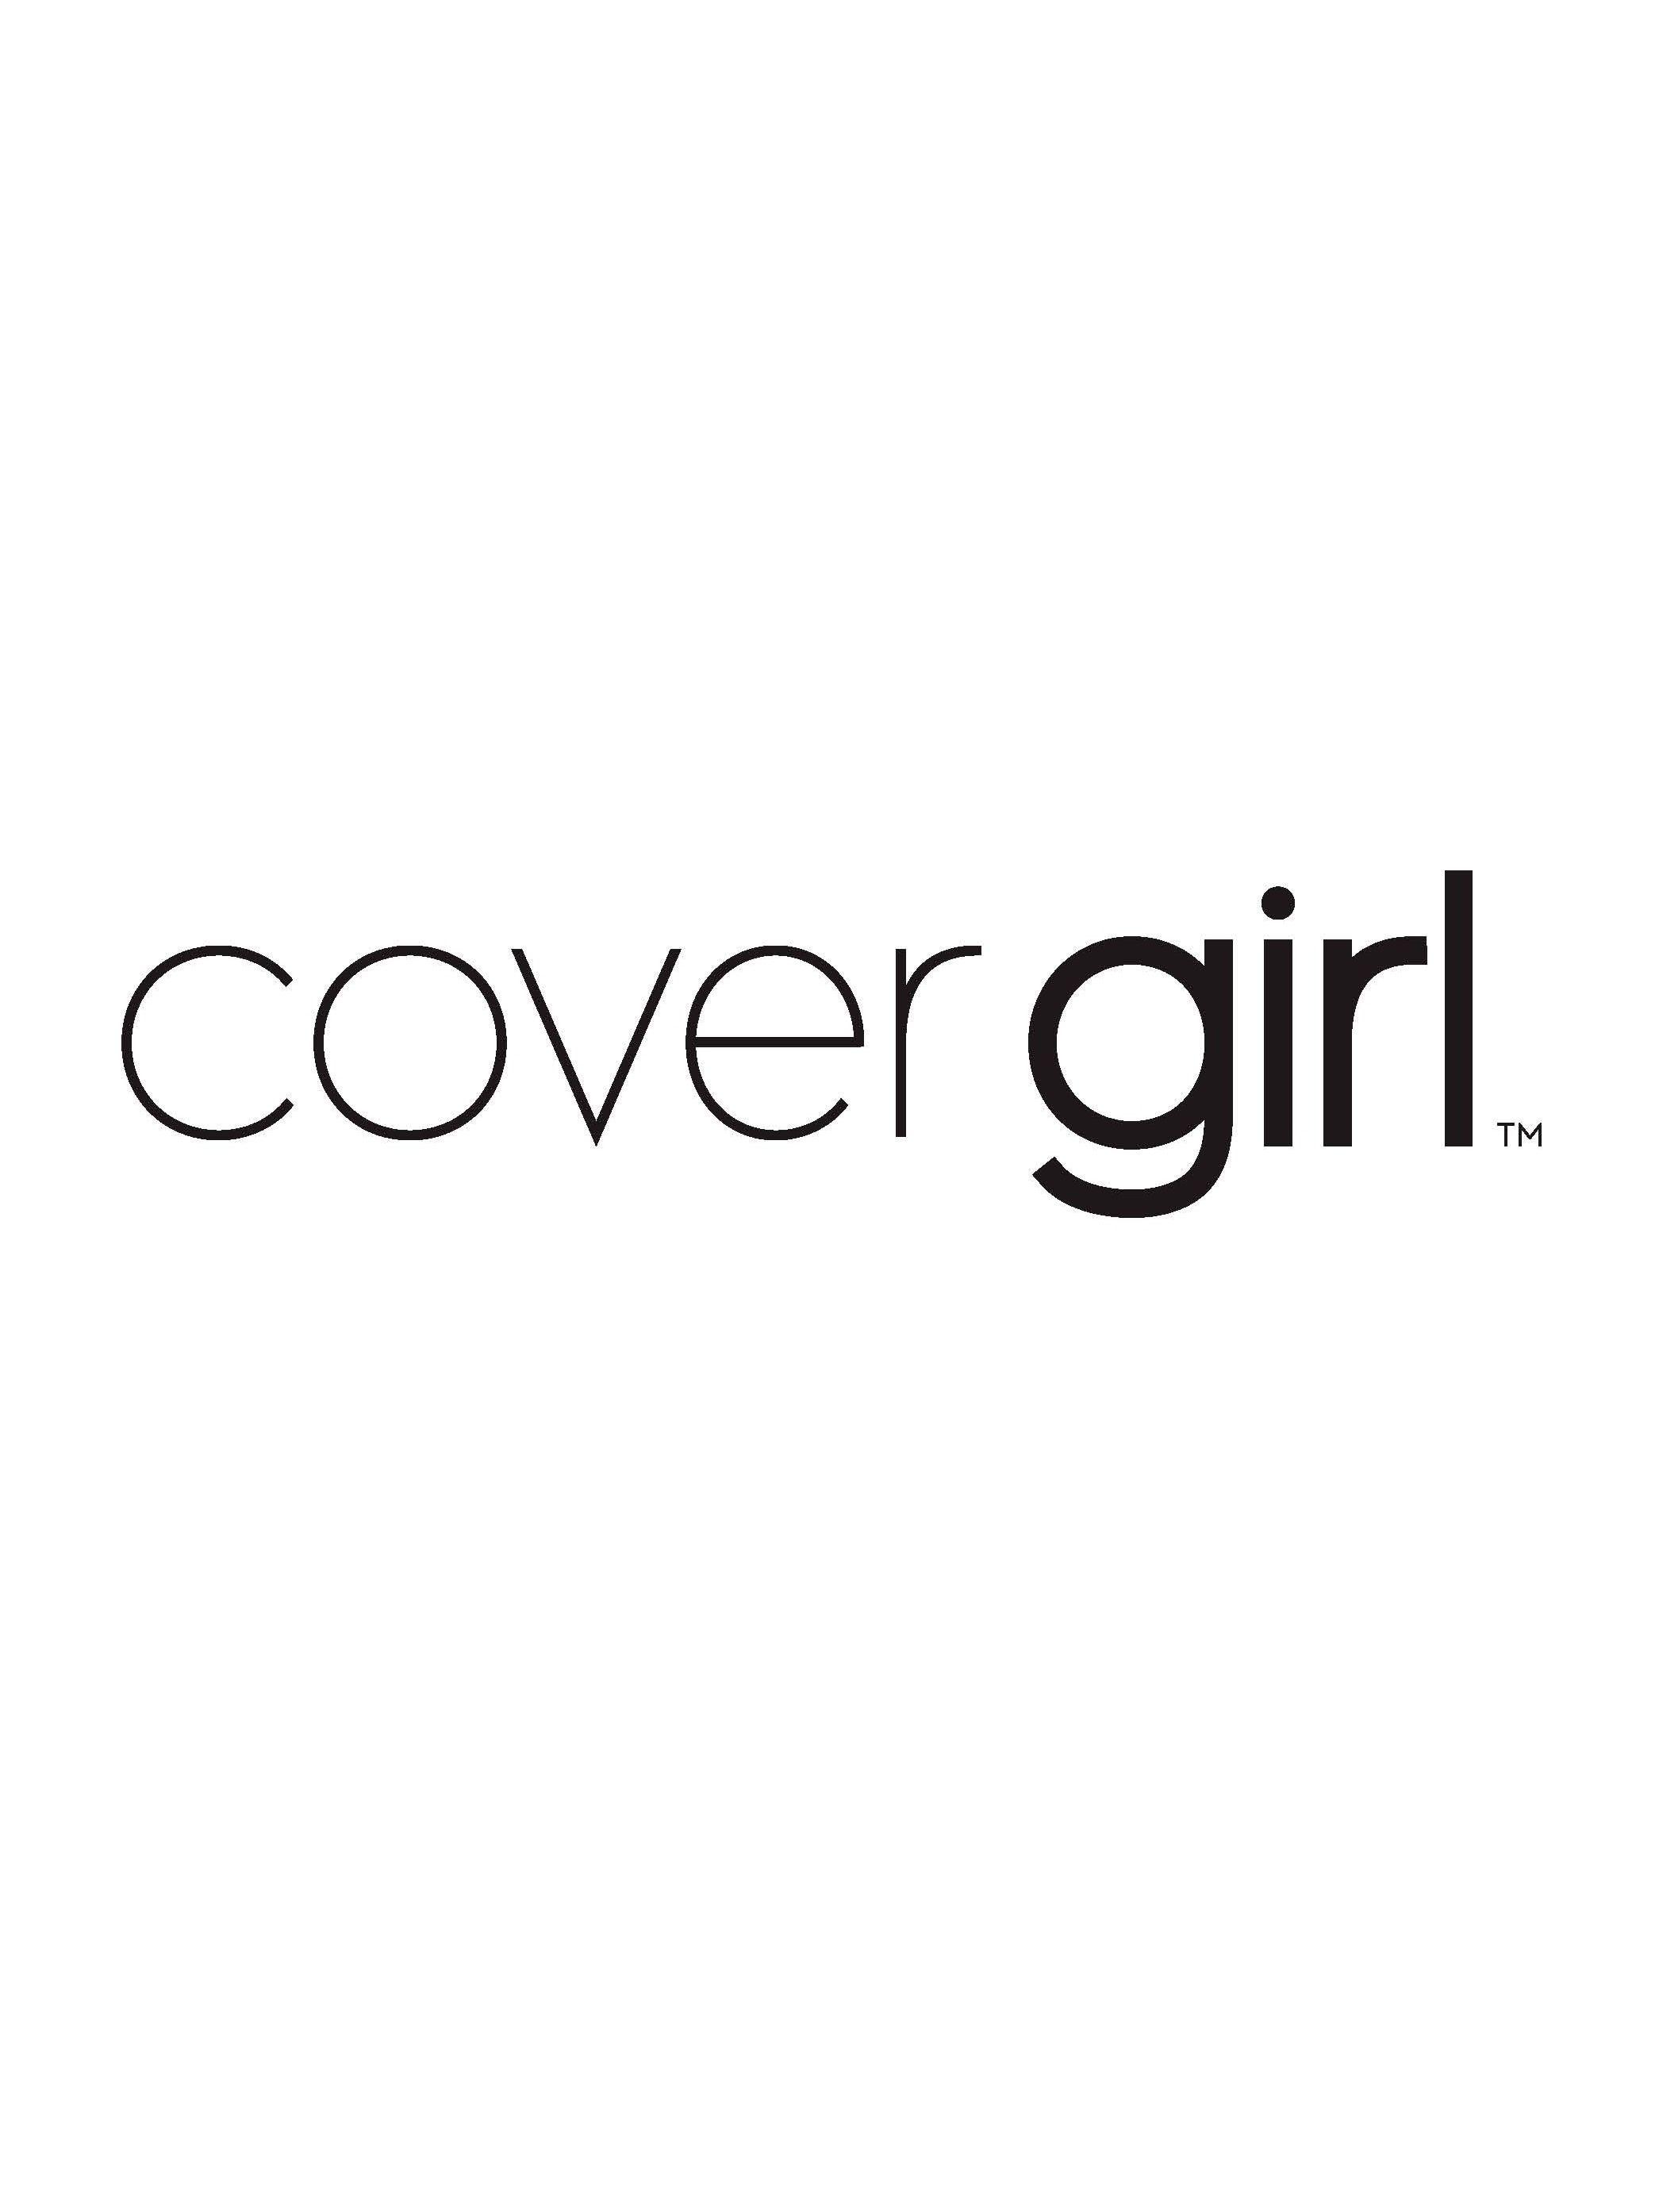 Covergirl Logo - Covergirl logo